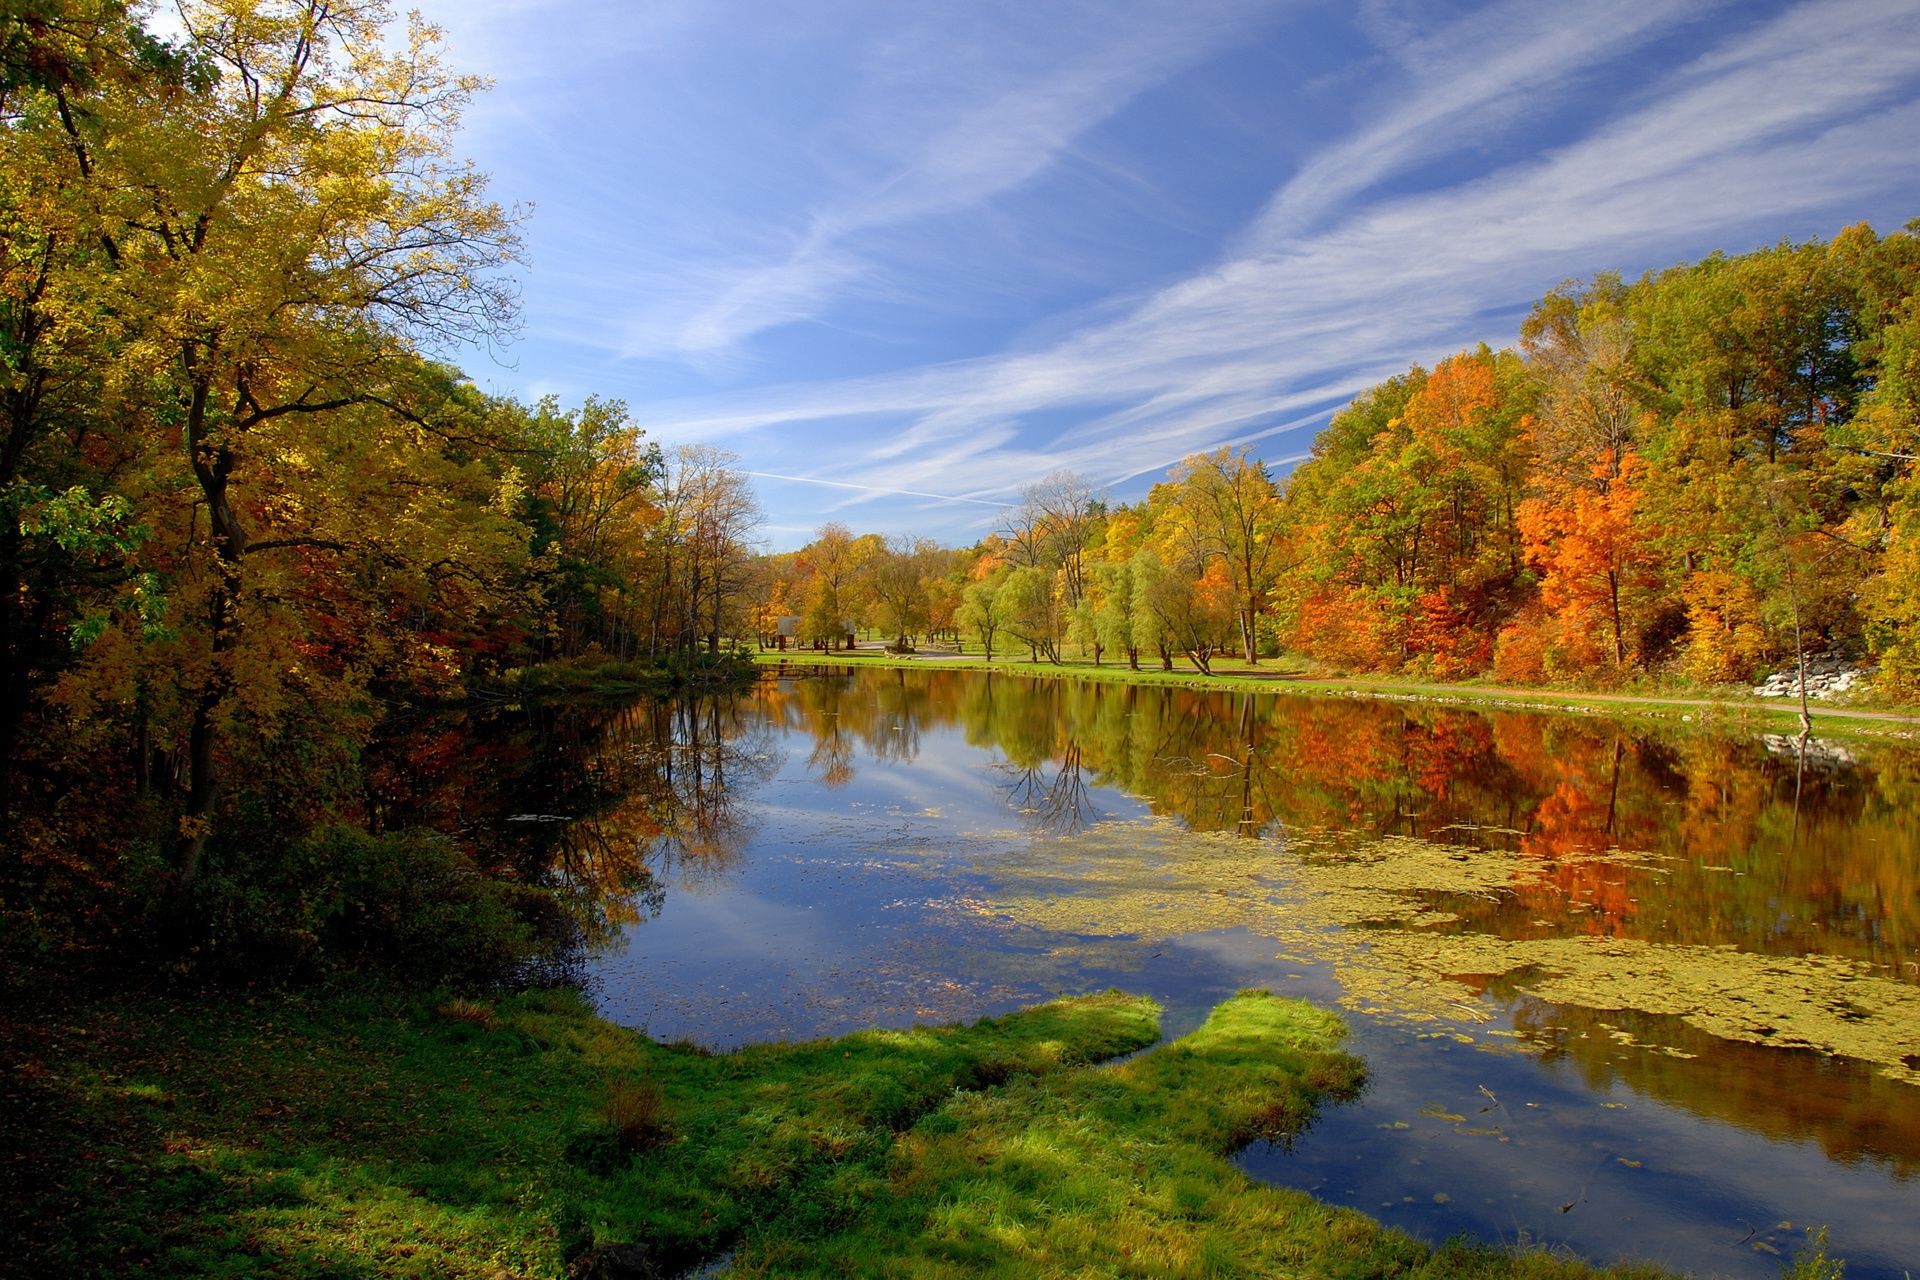 реки пруды и ручьи прудов и ручьев осень пейзаж дерево природа озеро древесины воды лист на открытом воздухе река отражение живописный рассвет сезон парк хладнокровие хорошую погоду